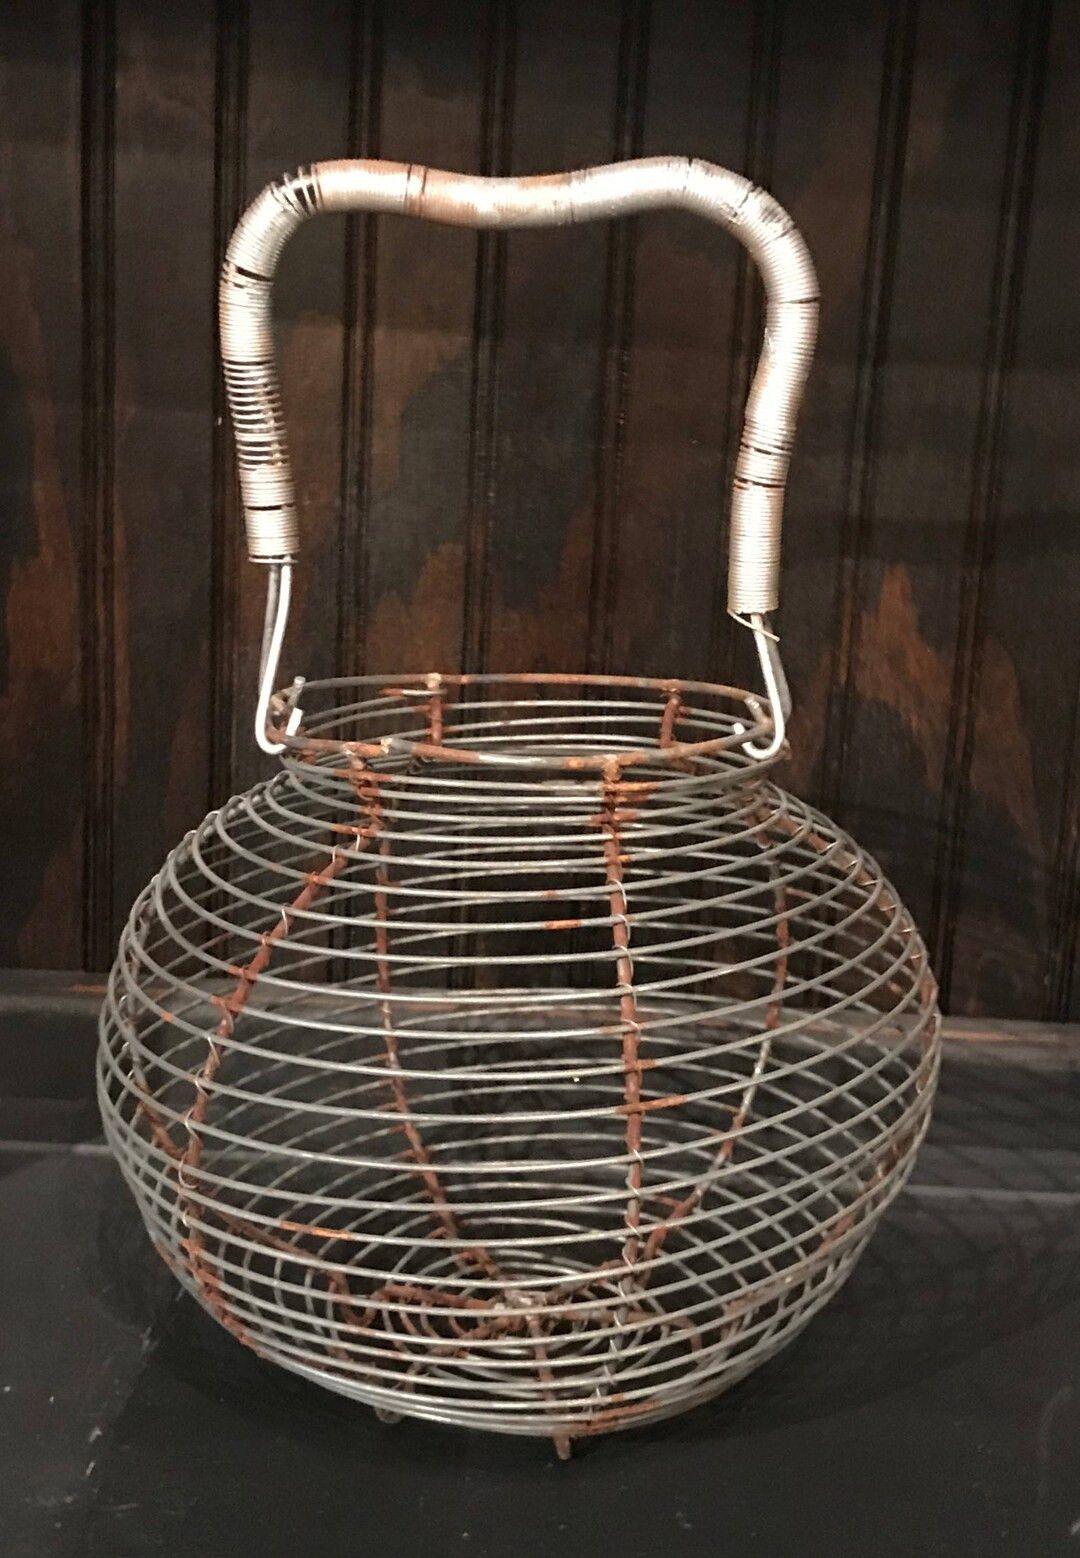 Vintage wire egg basket | Etsy (US)